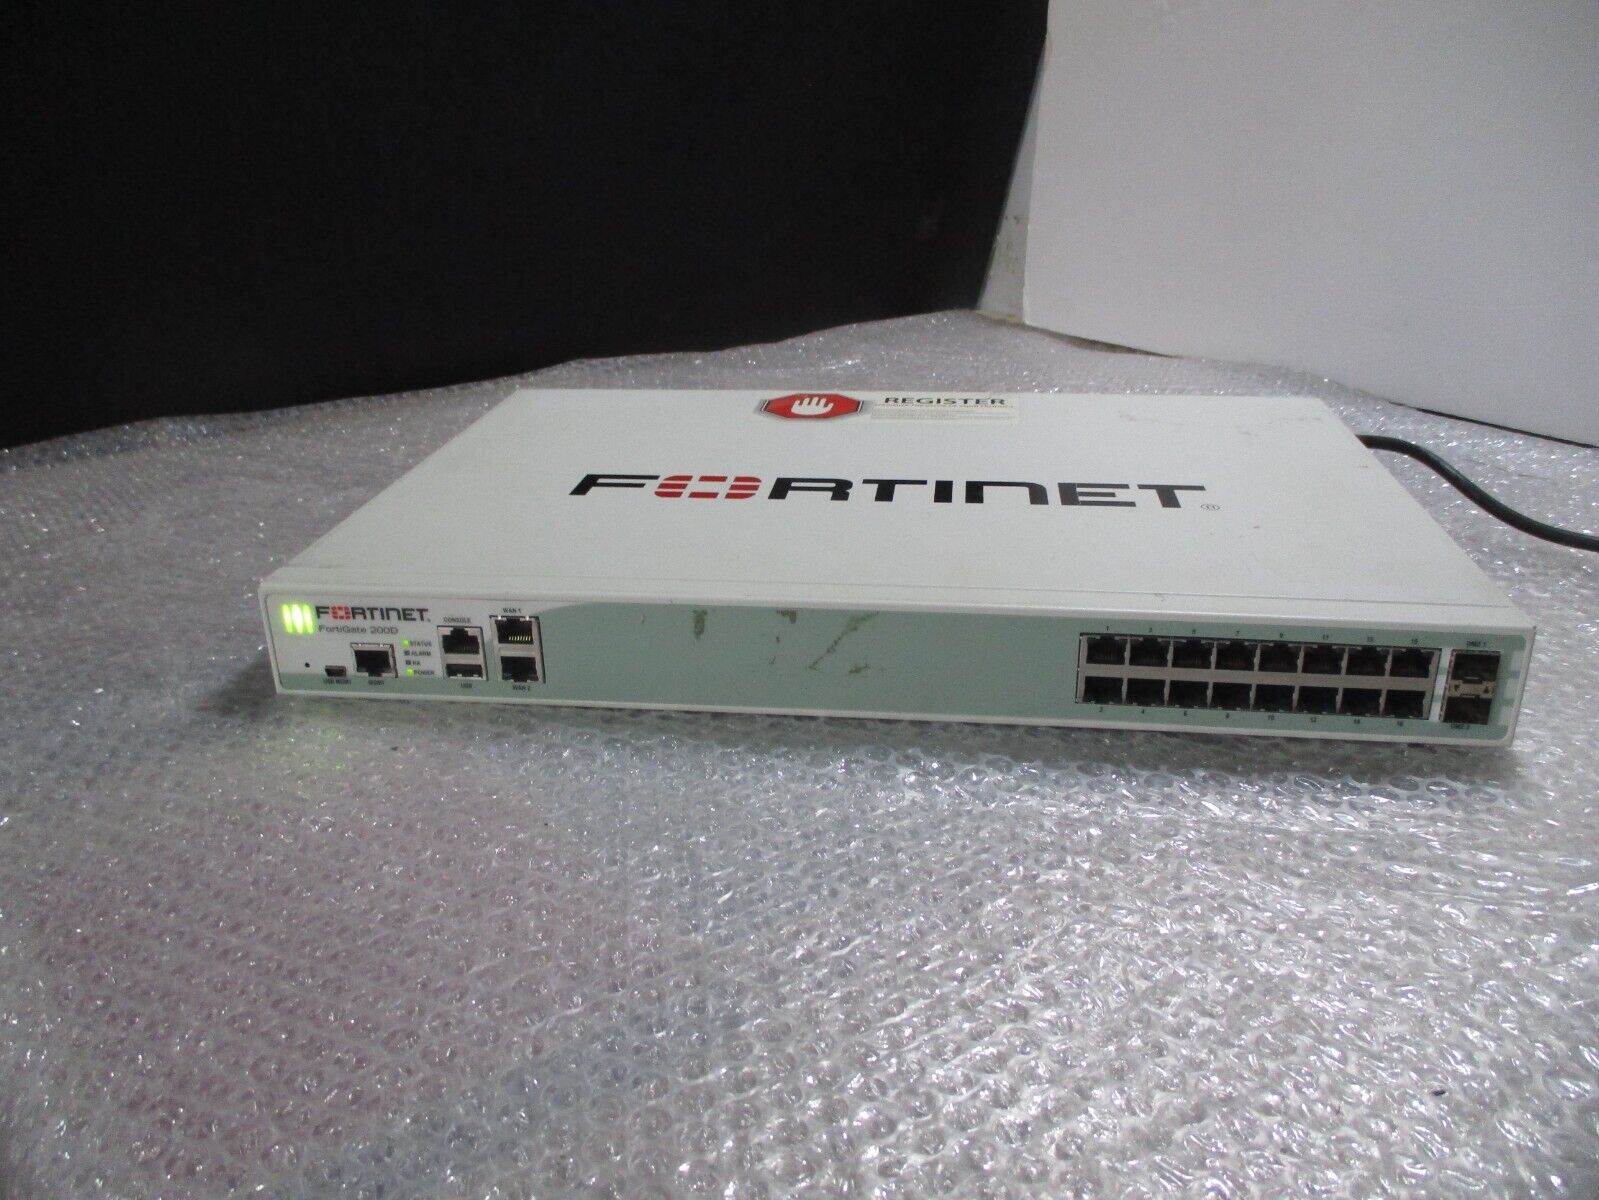 Fortinet FortiGate-200D FG-200D Firewall Appliance P11545-04-03